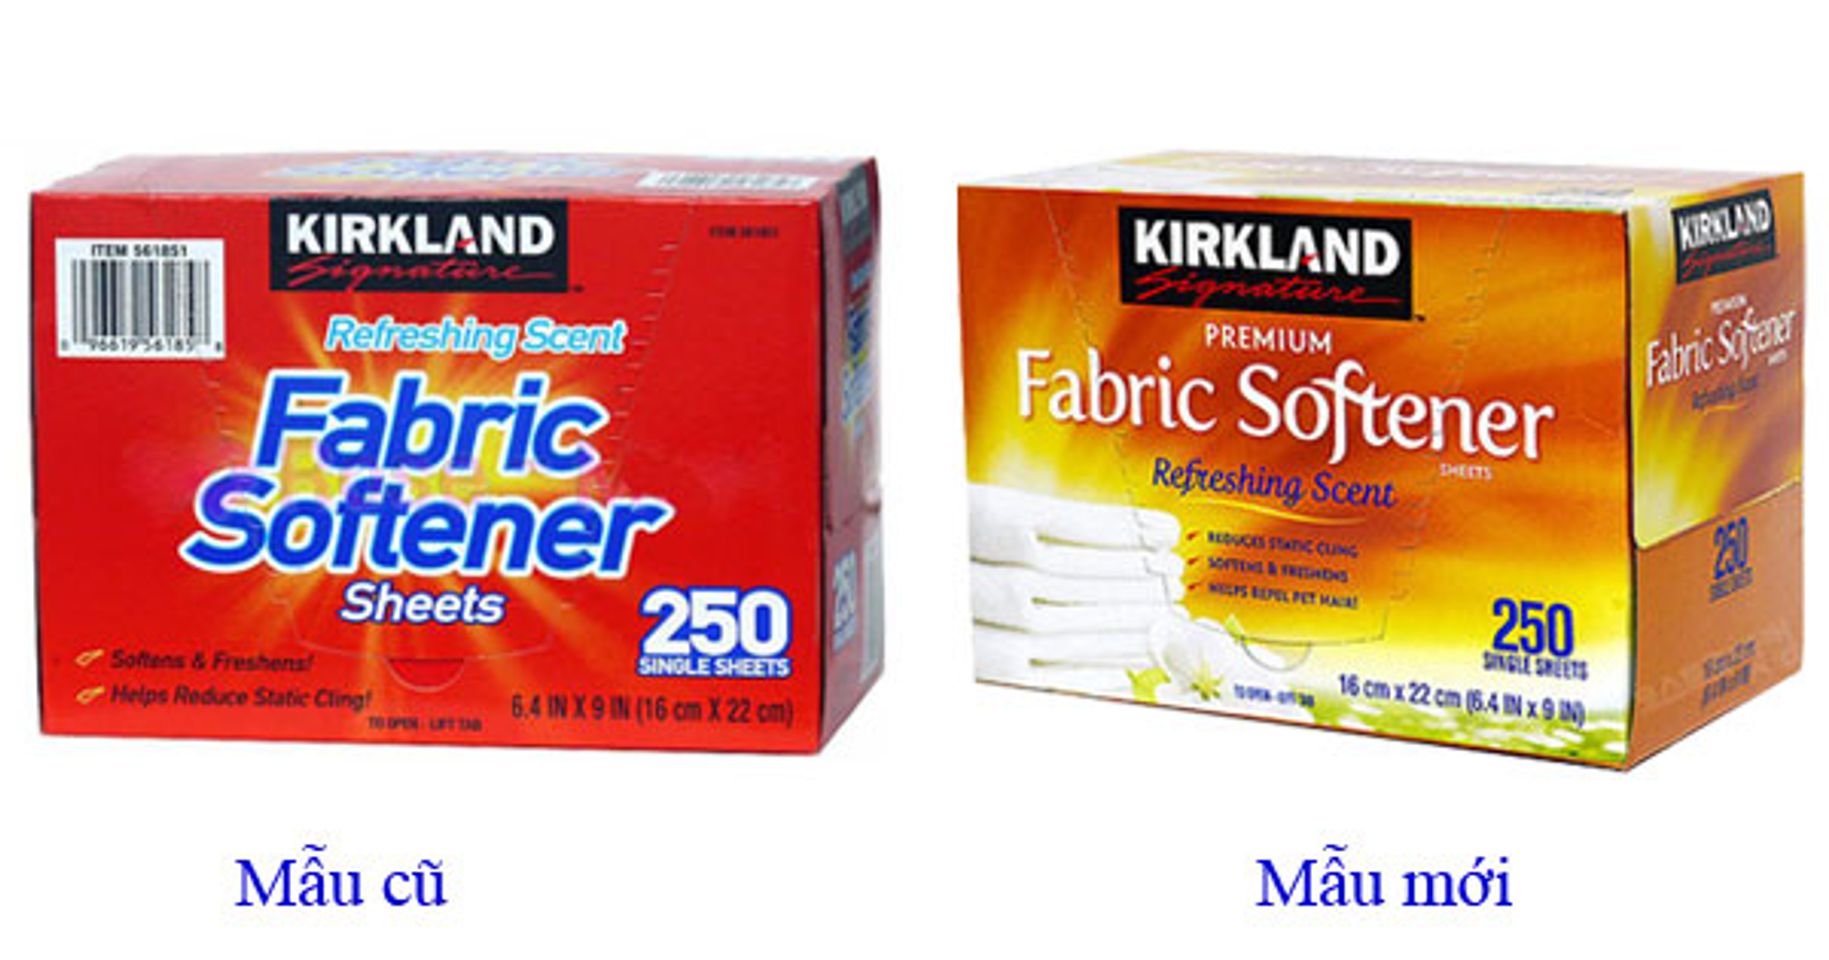 Giấy thơm quần áo Kirkland Fabric Softener 250 tờ của Mỹ mẫu cũ và mẫu mới